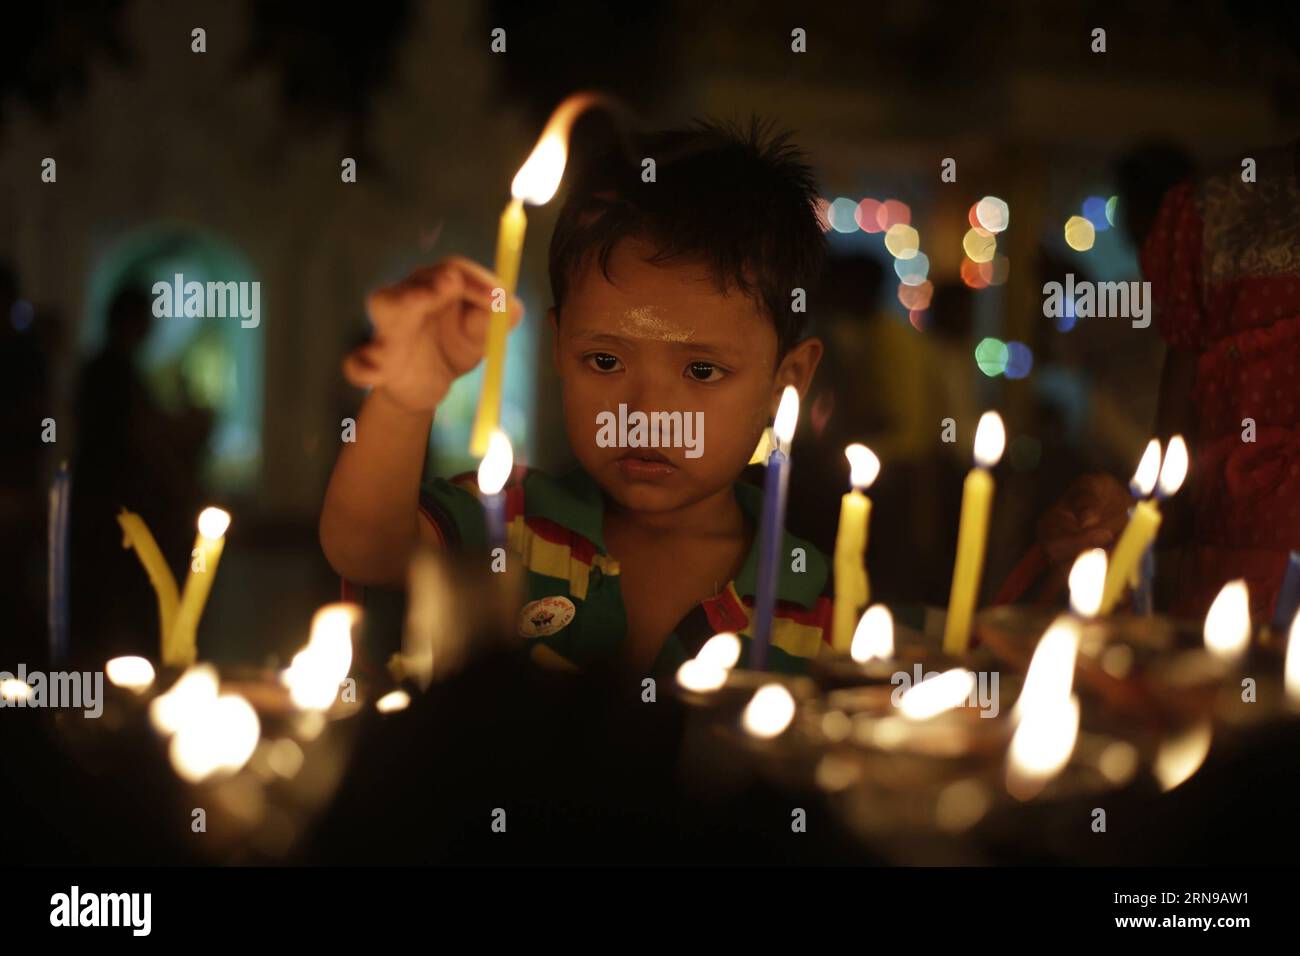 Ein Kind zündet Kerzen auf Myanmars traditionellem Tazaungdaing-Festival in der Shwedagon-Pagode in Yangon, Myanmar, am 26. November 2015 an. Das Tazaungdaing Festival, auch bekannt als das Festival der Lichter, das im achten Monat des traditionellen myanmarischen Kalenders auf den Vollmondtag fällt, wird als Nationalfeiertag in Myanmar gefeiert und markiert das Ende der Regenzeit. ) MYANMAR-YANGON-TAZAUNGDAING FESTIVAL UxAung PUBLICATIONxNOTxINxCHN A Child Lights Candles ON Myanmar S Traditional Tazaungdaing Festival AT the Shwedagon Pagoda in Yangon Myanmar Nov 26 2015 das Tazaungdaing Festival thus KN Stockfoto